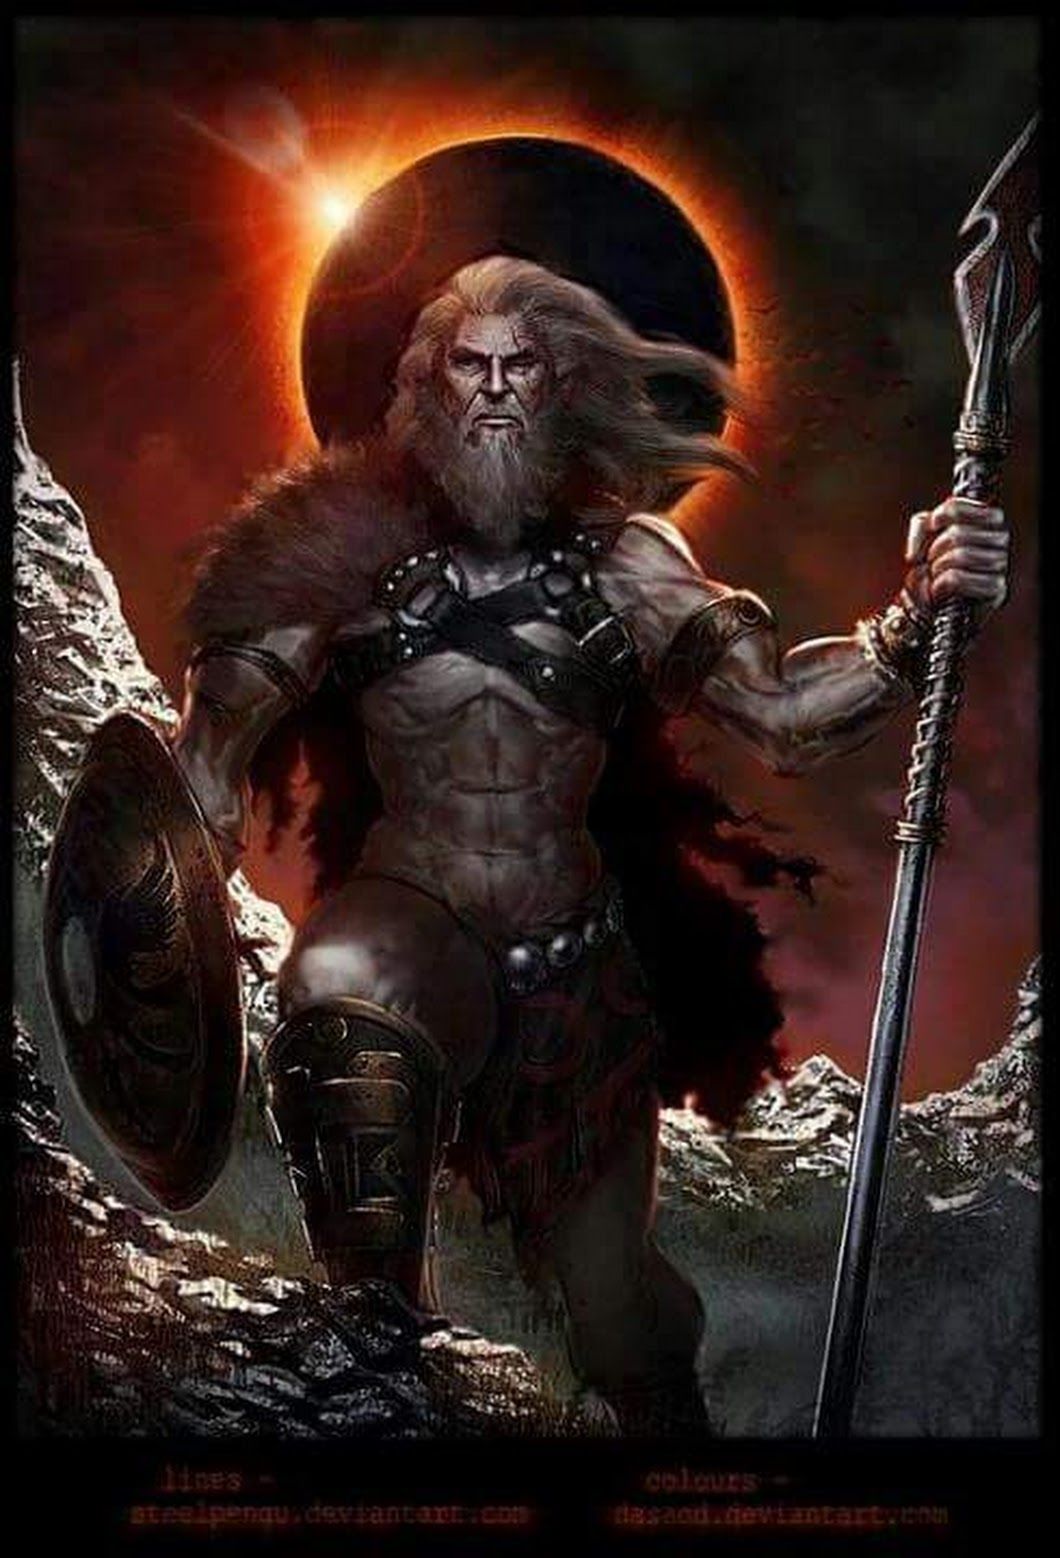 Tyr God of War Ragnarok: Origem e relações na mitologia nórdica - Millenium